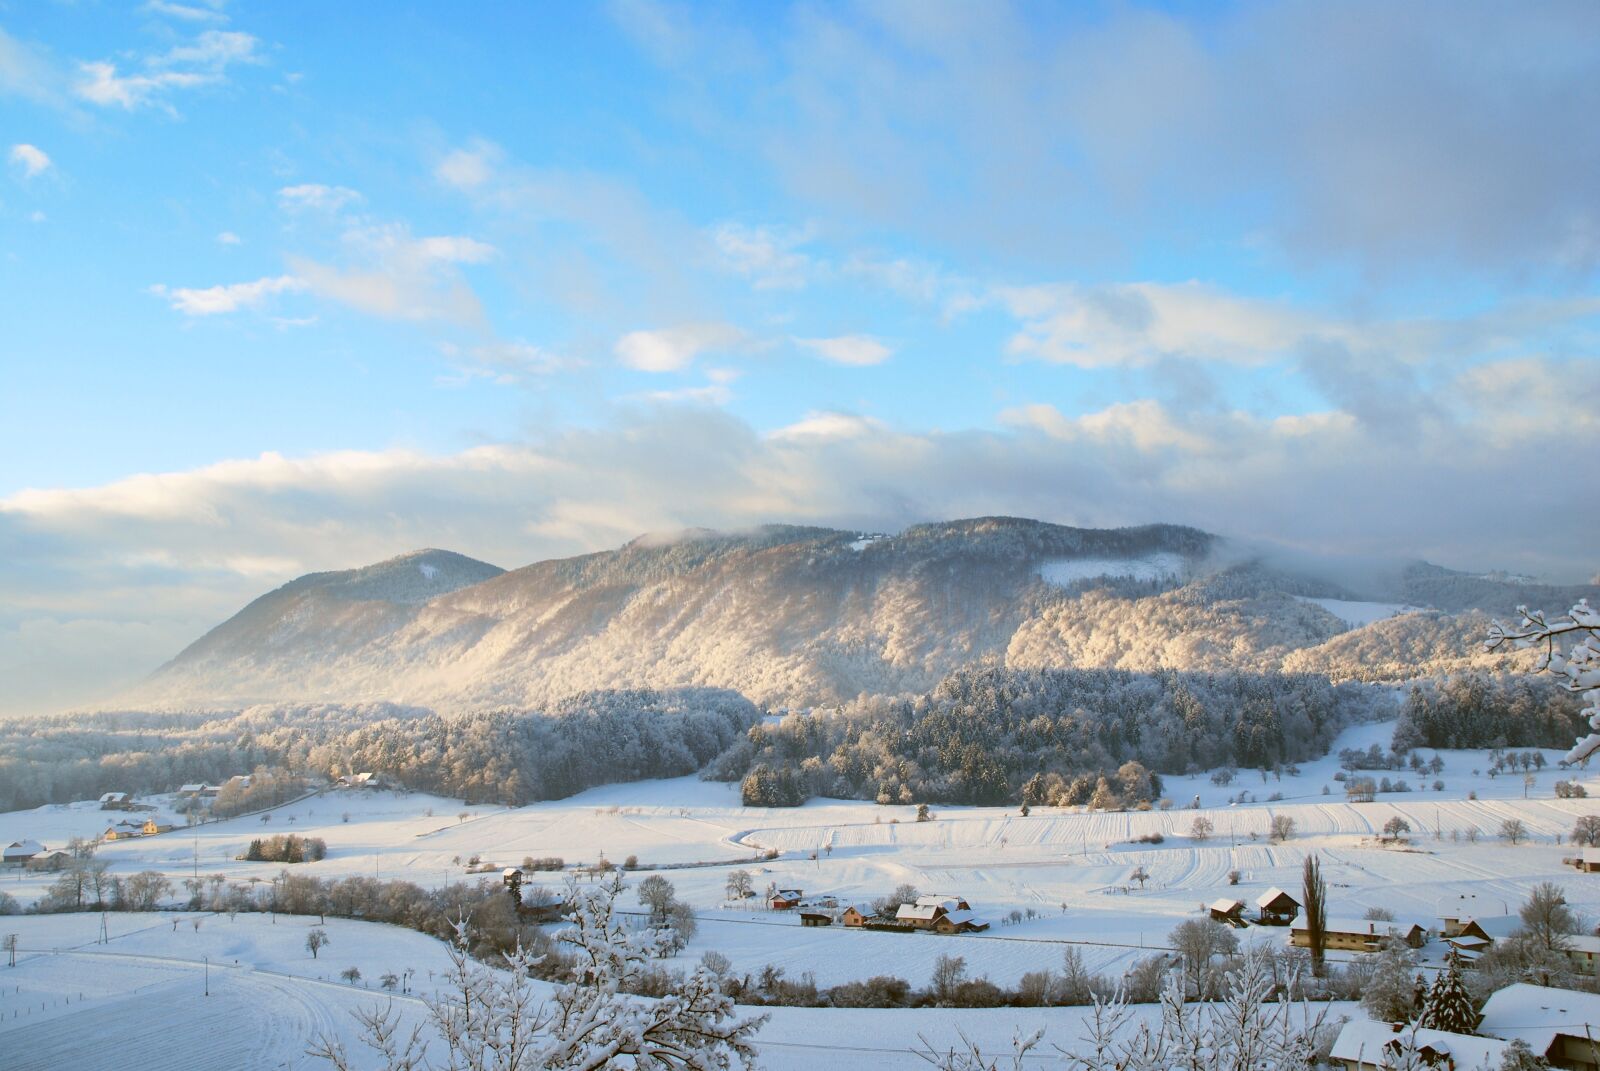 Nikon D60 sample photo. Snow, landscape, nature photography